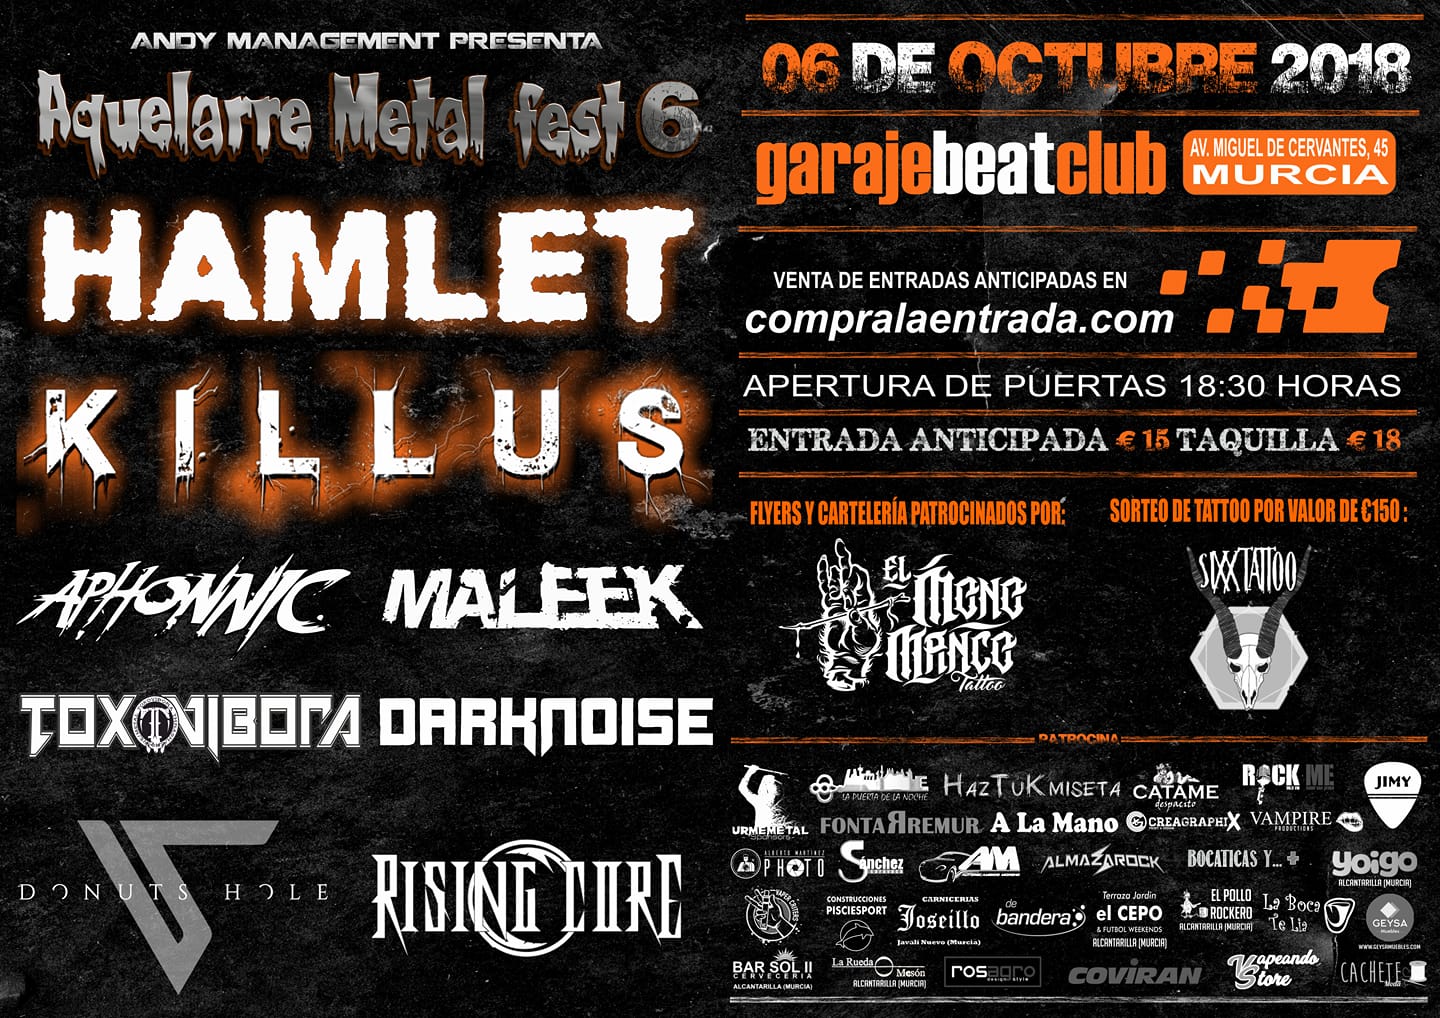 Aquelarre Metal Fest 6